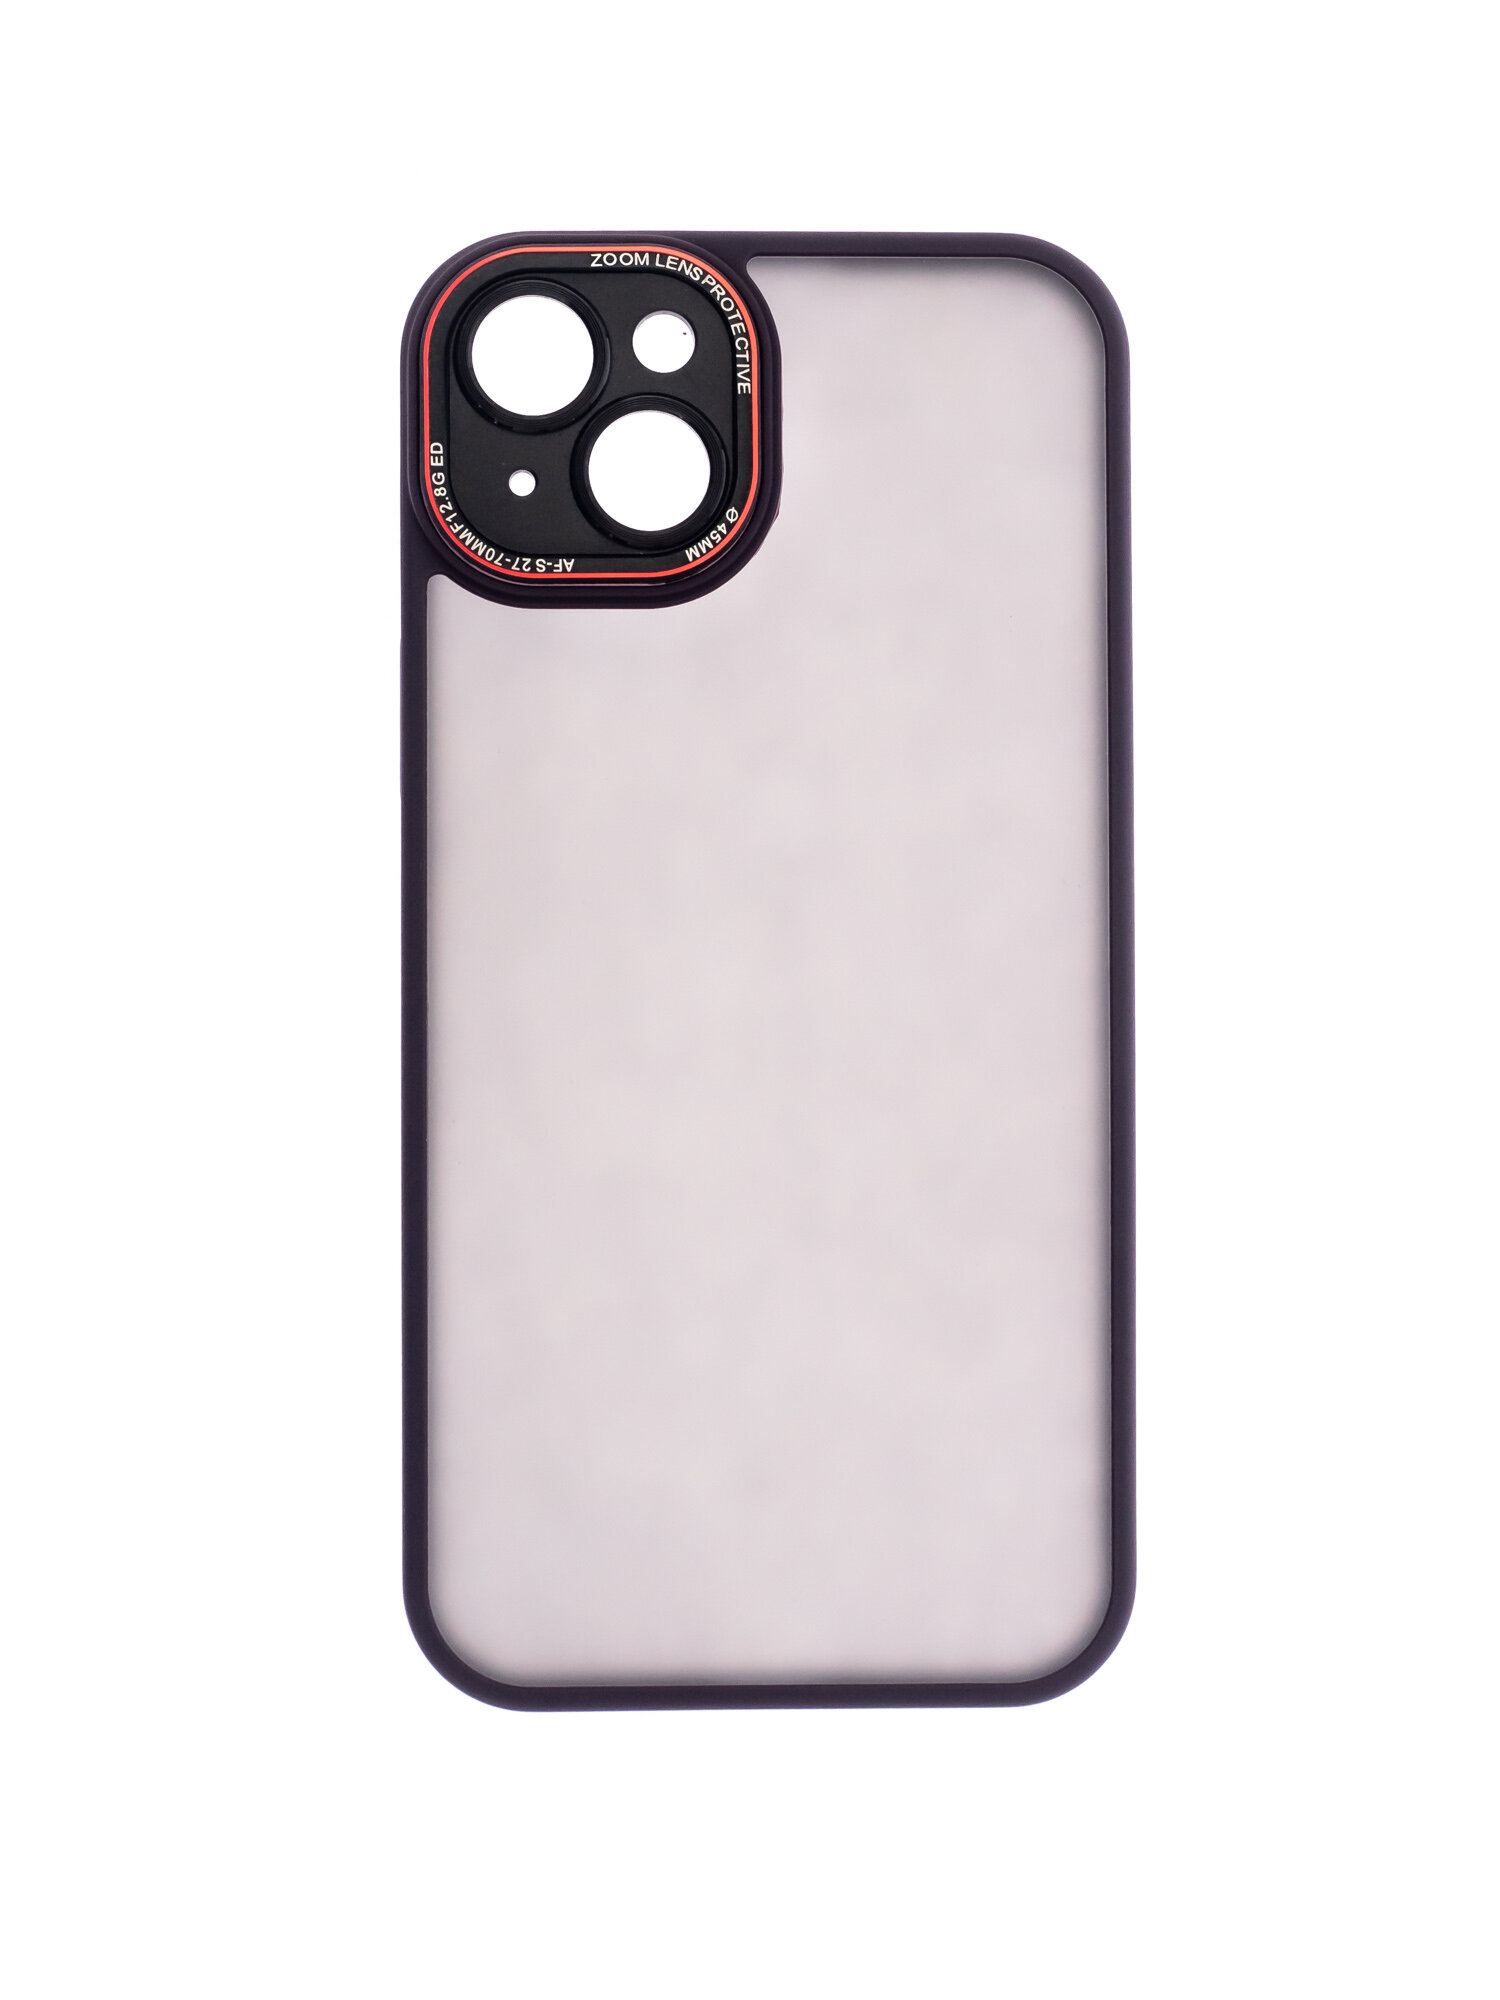 Чехол-накладка для iPhone 15 Plus VEGLAS Crystal Shield фиолетовый